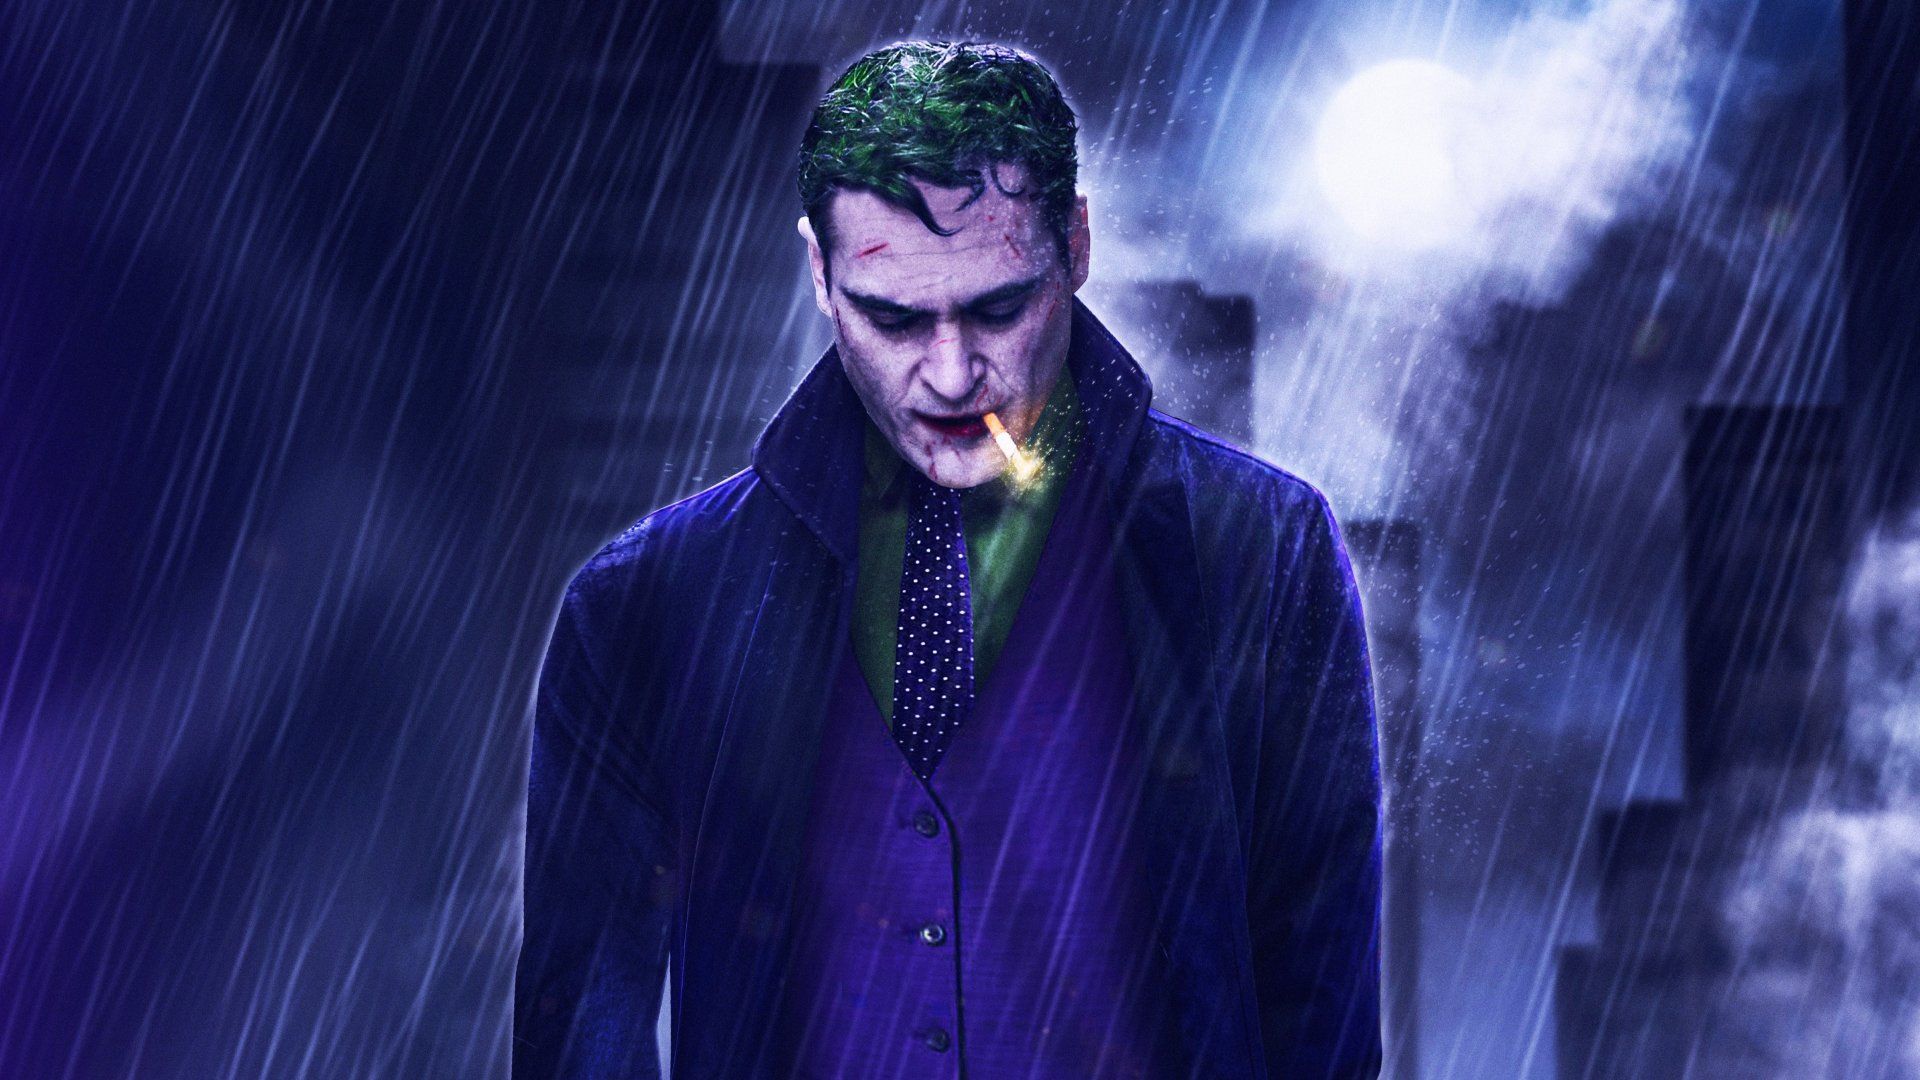 Joker Wallpaper Hd - Joker Movie 2019 Hd - HD Wallpaper 